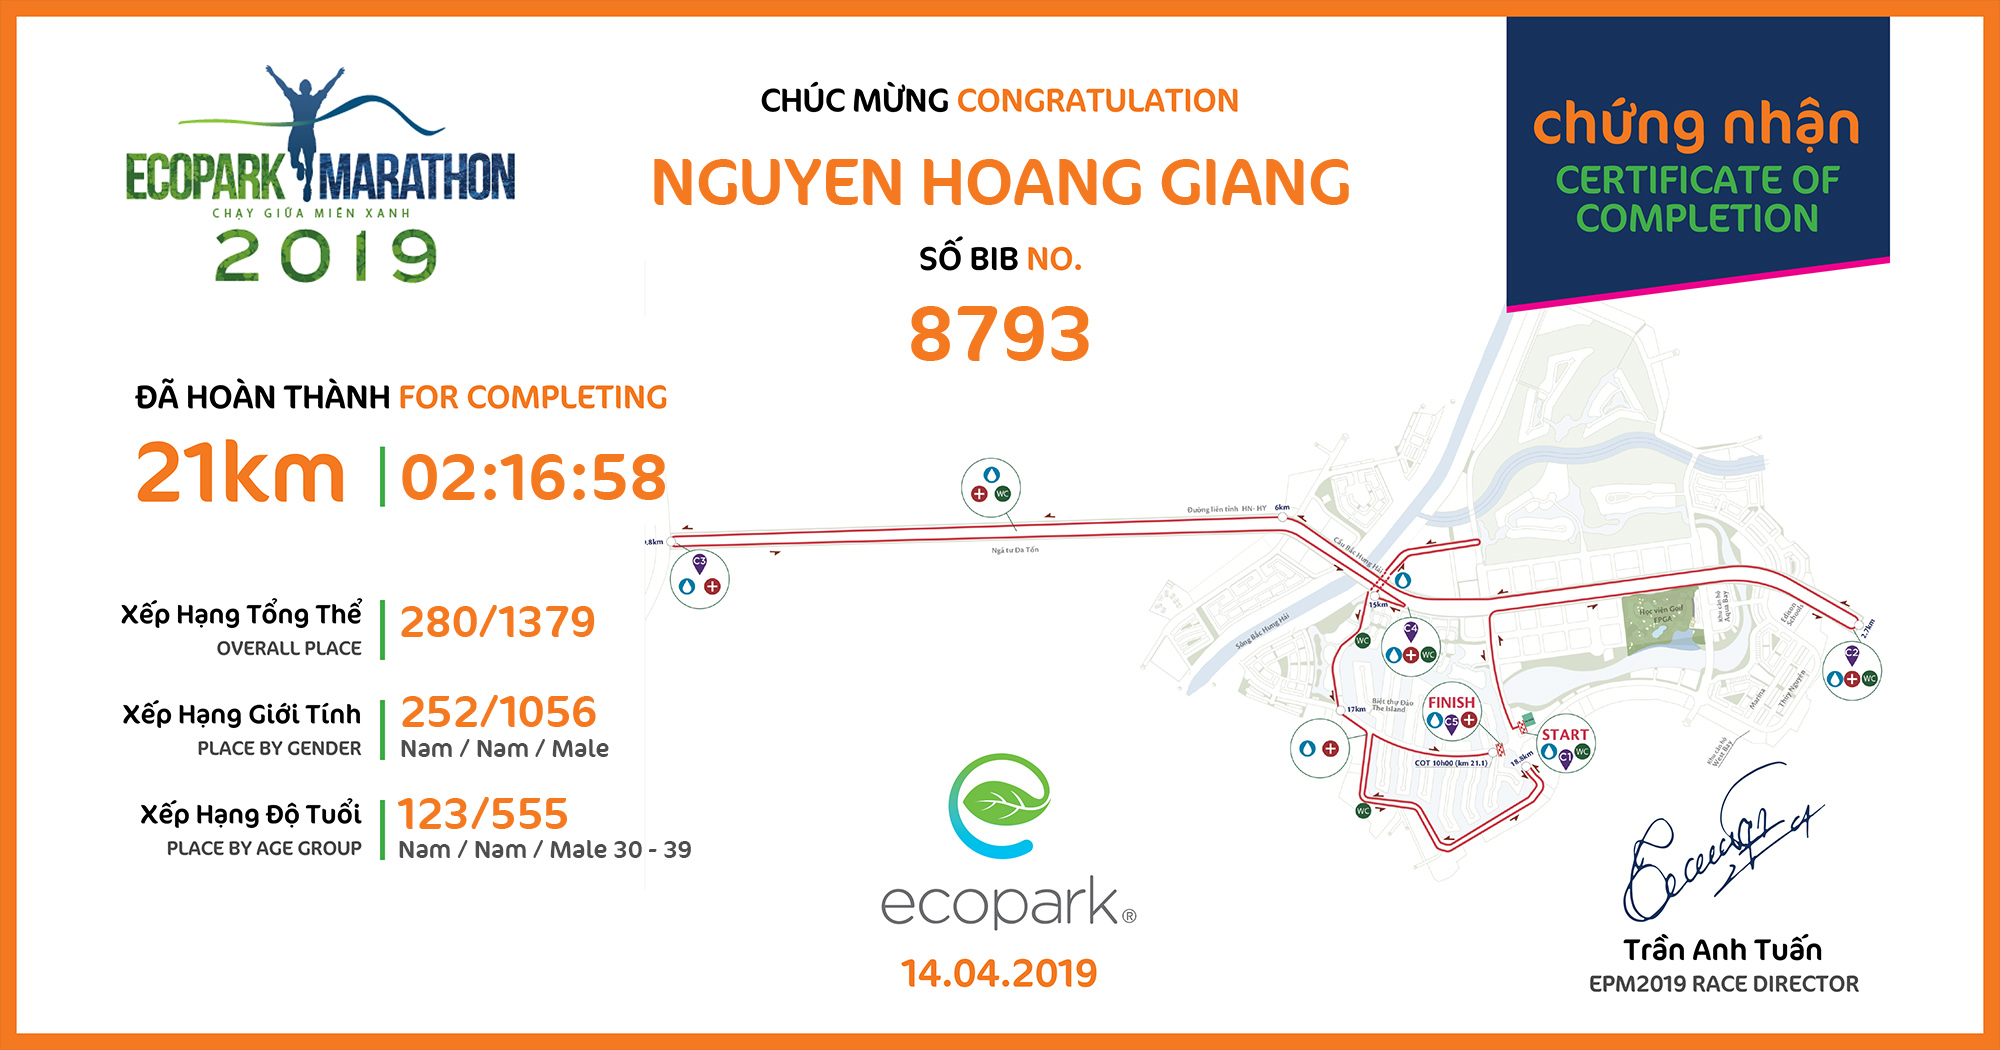 8793 - Nguyen Hoang Giang